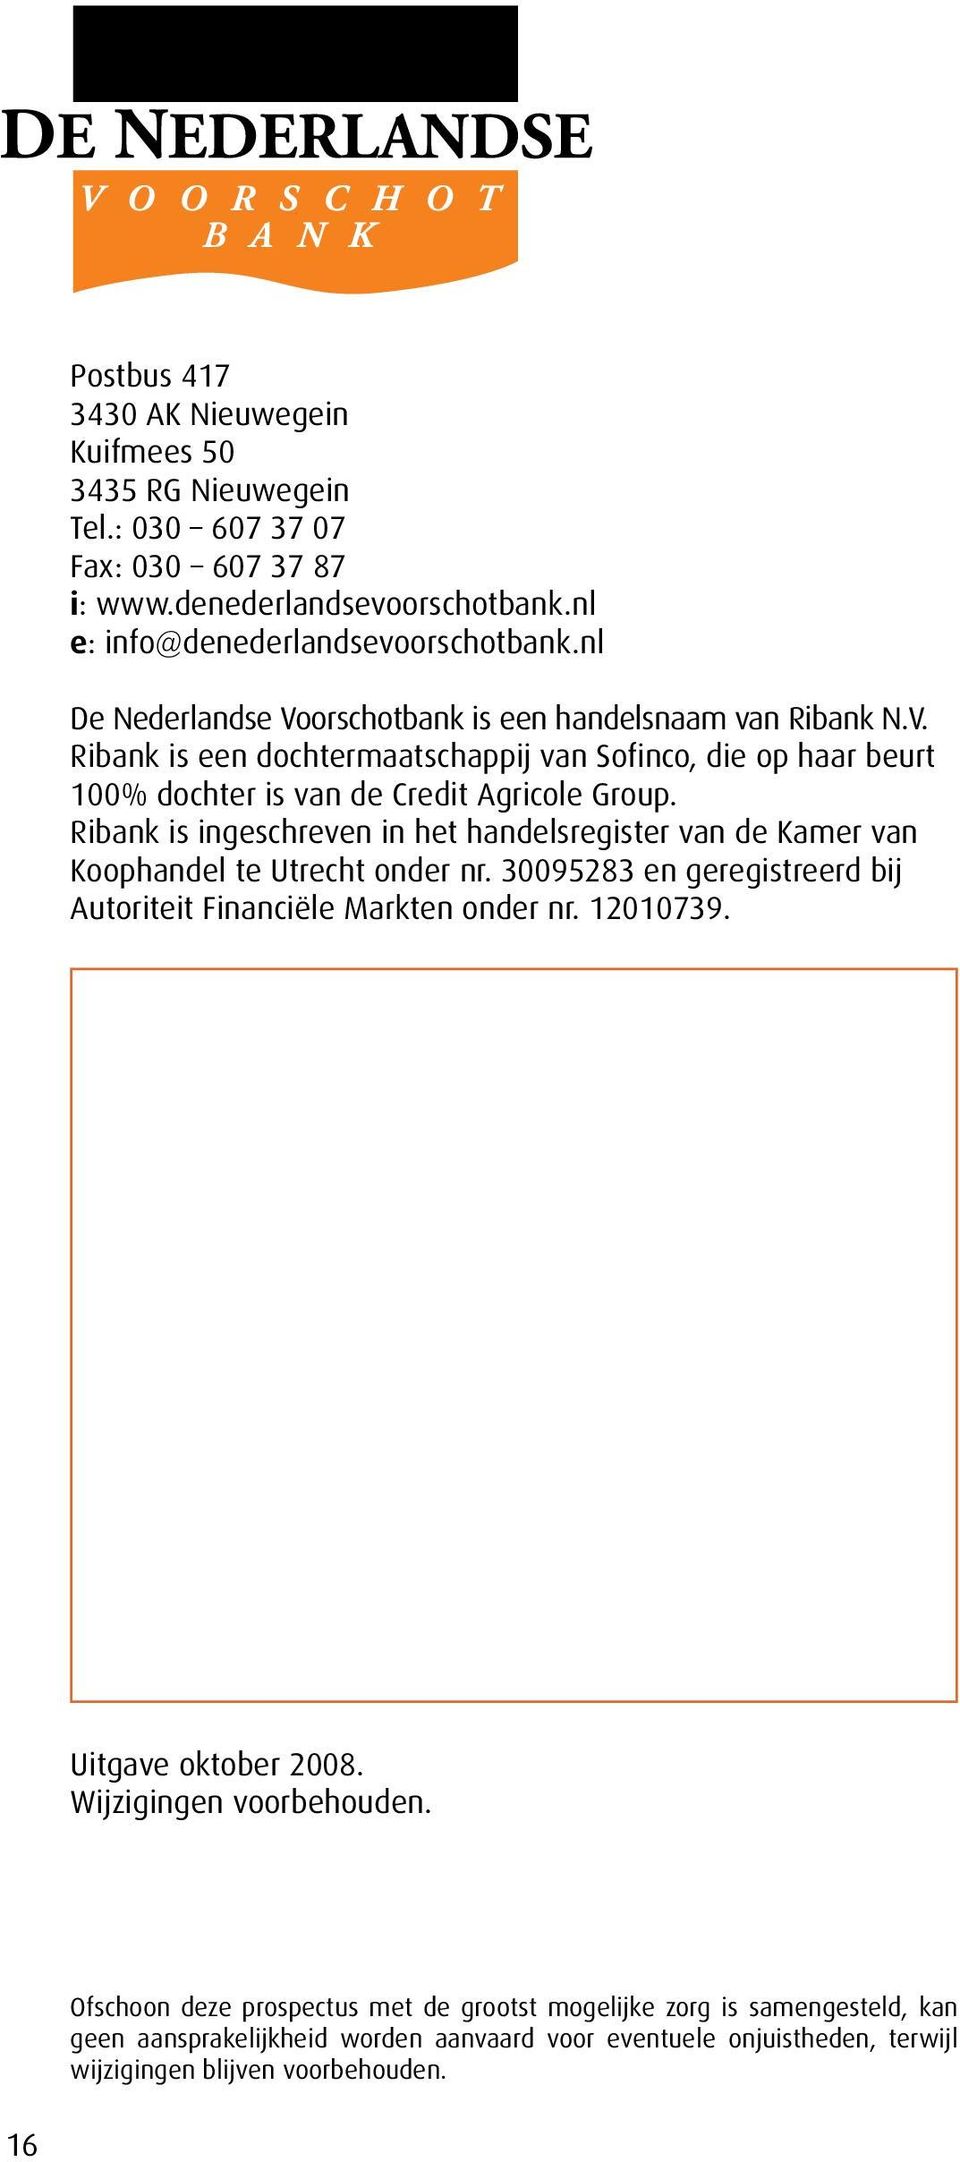 Ribank is ingeschreven in het handelsregister van de Kamer van Koophandel te Utrecht onder nr. 30095283 en geregistreerd bij Autoriteit Financiële Markten onder nr. 12010739.